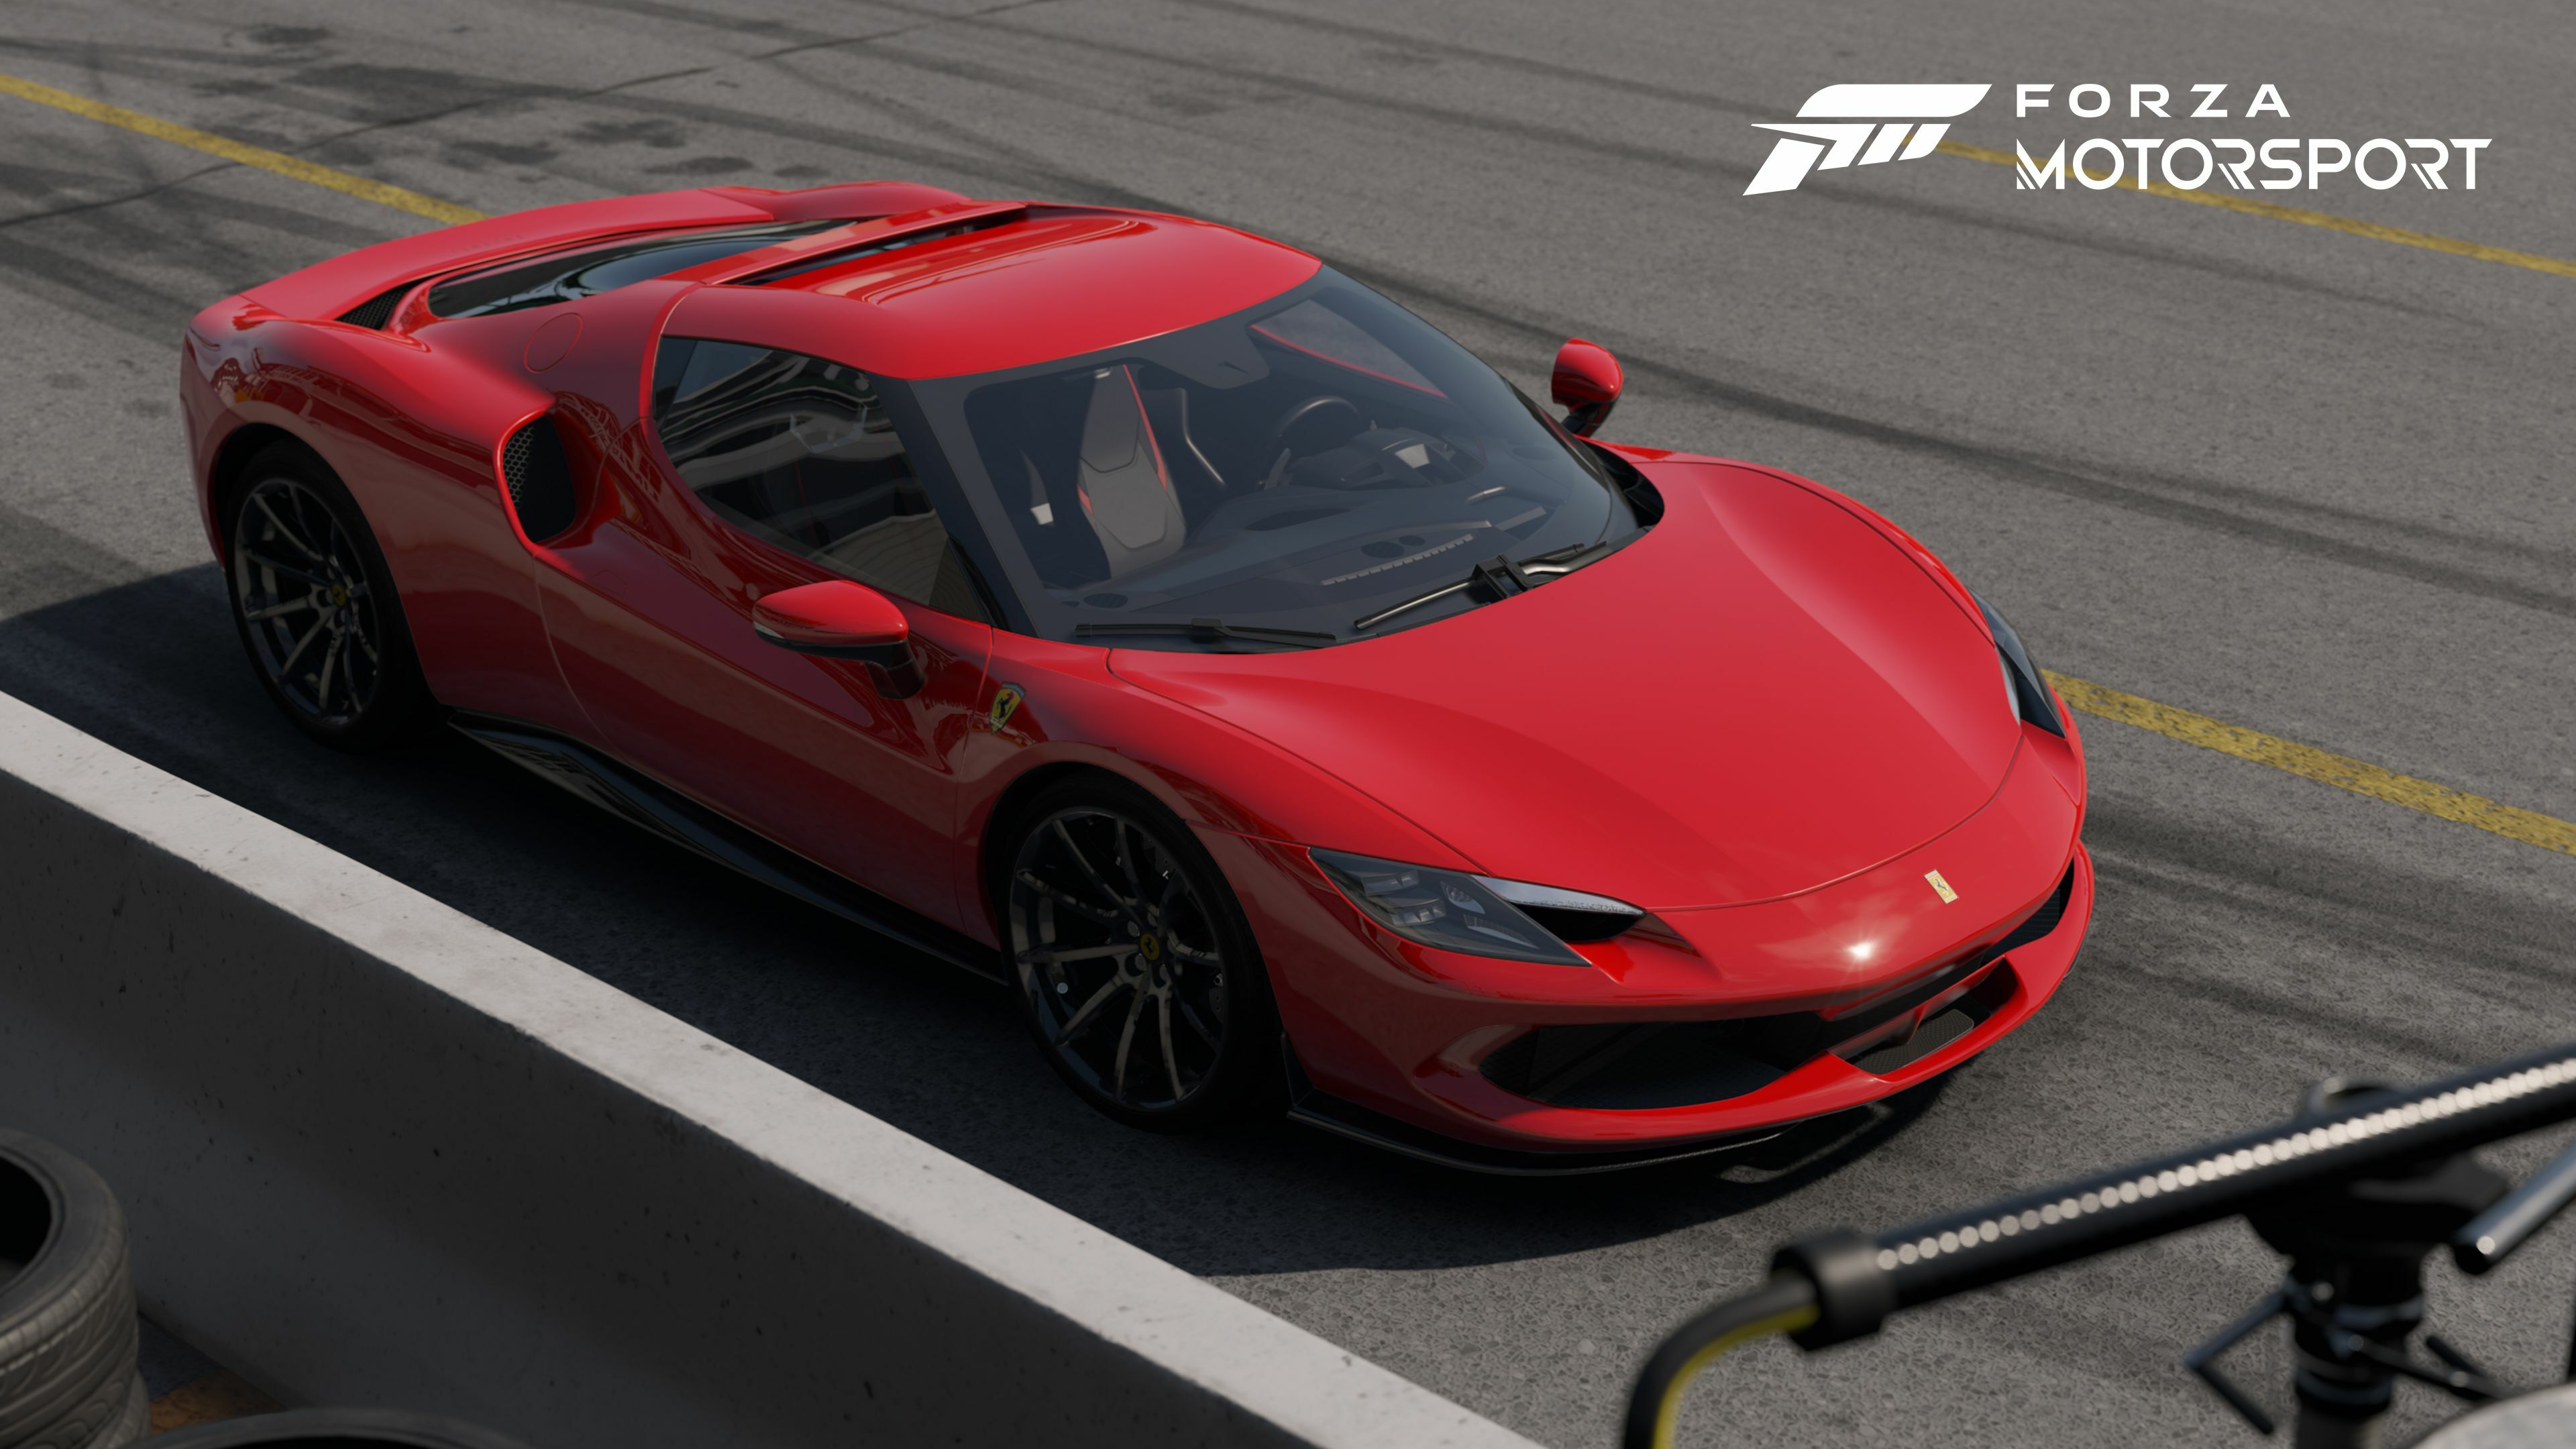 Forza Motorsport 7 - Wikipedia